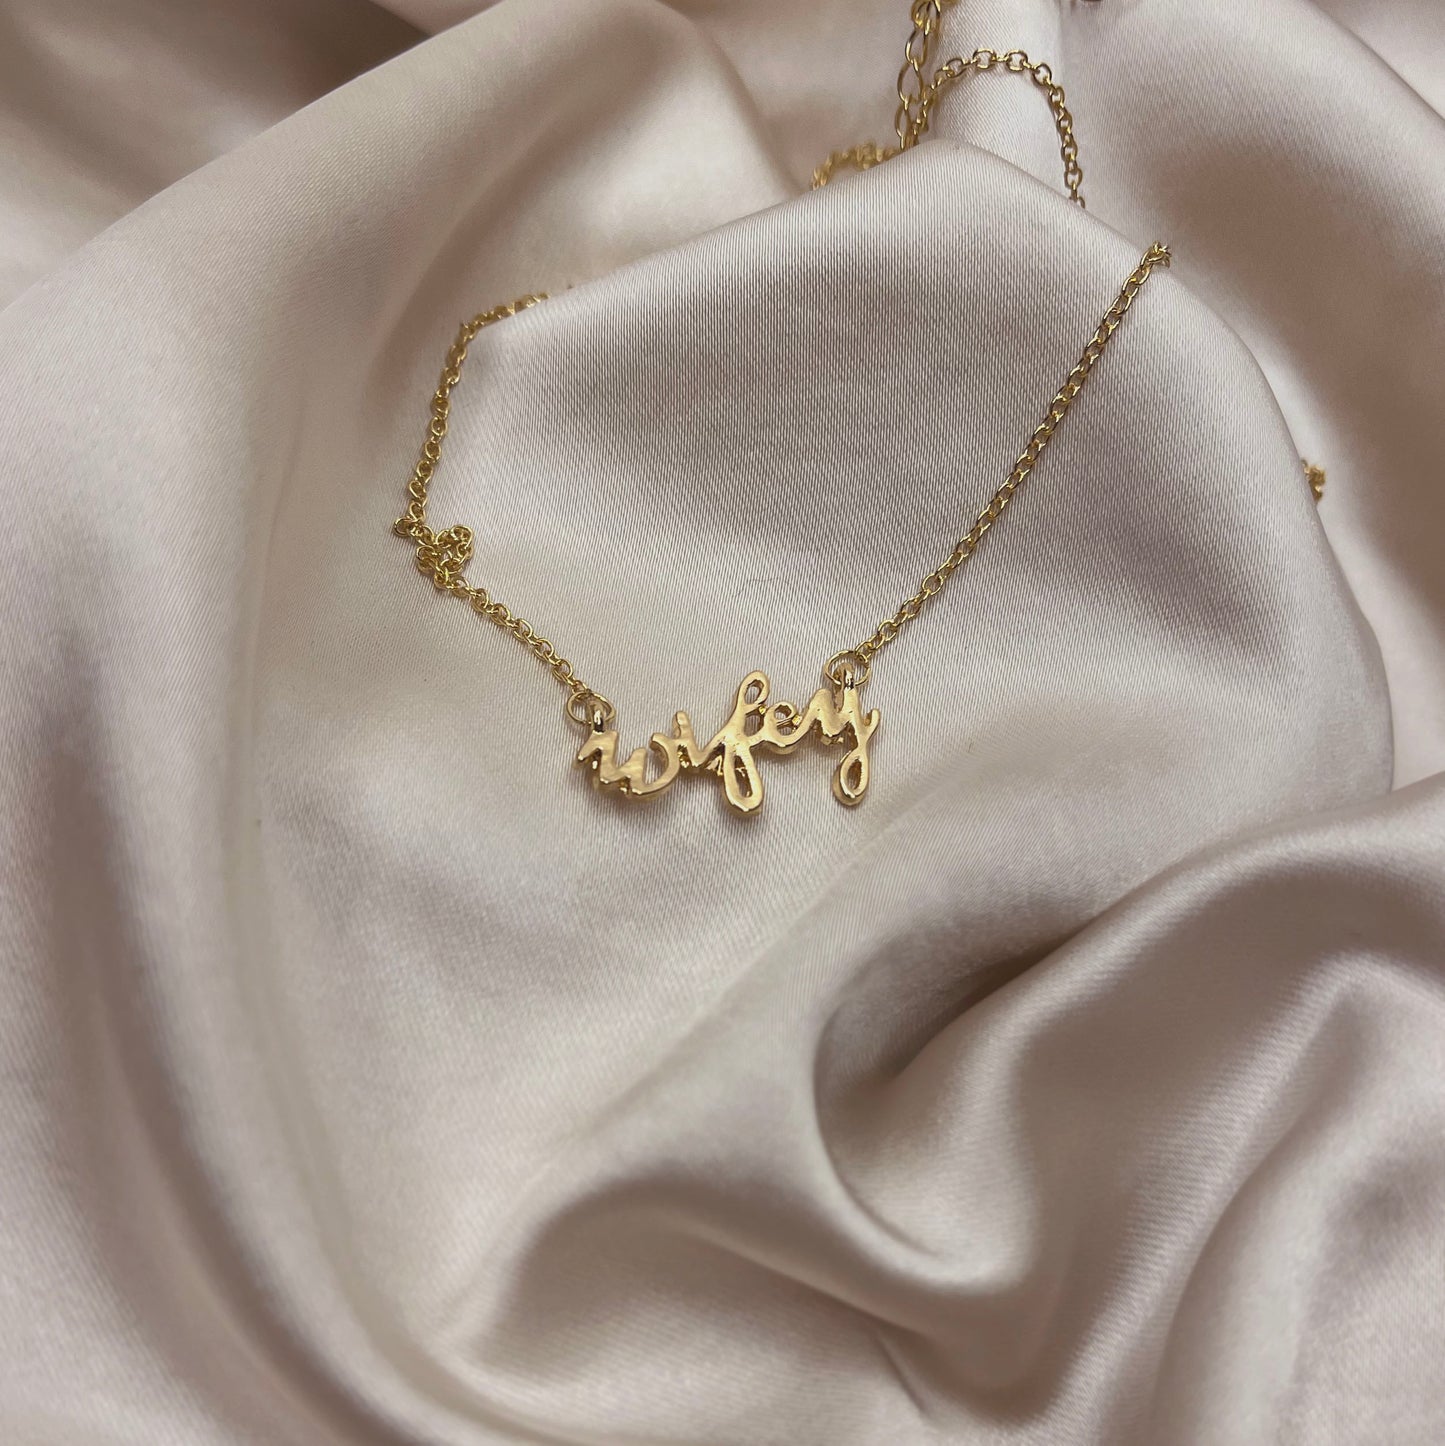 'Wifey' Necklace